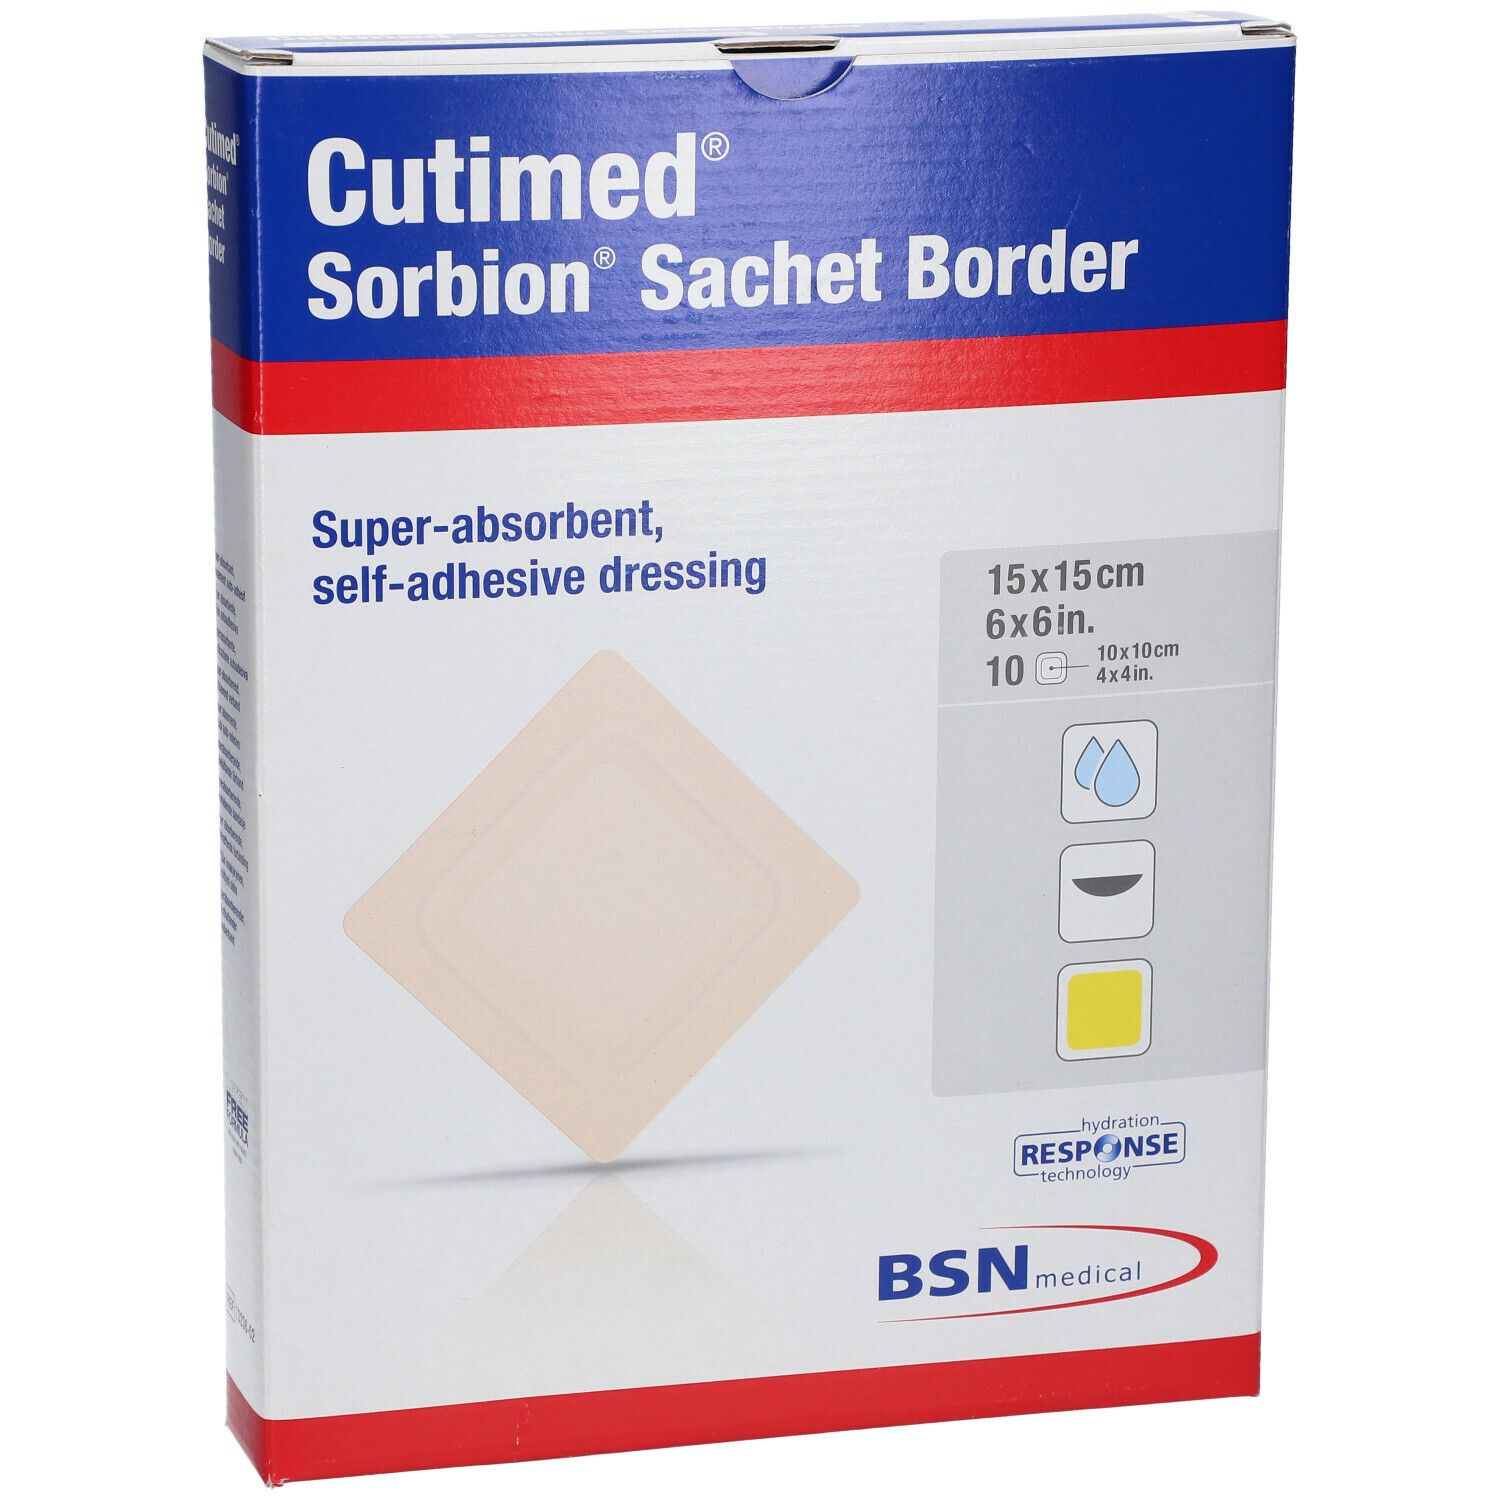 Cutimed® Sorbion Sachet Border 15 cm x 15 cm